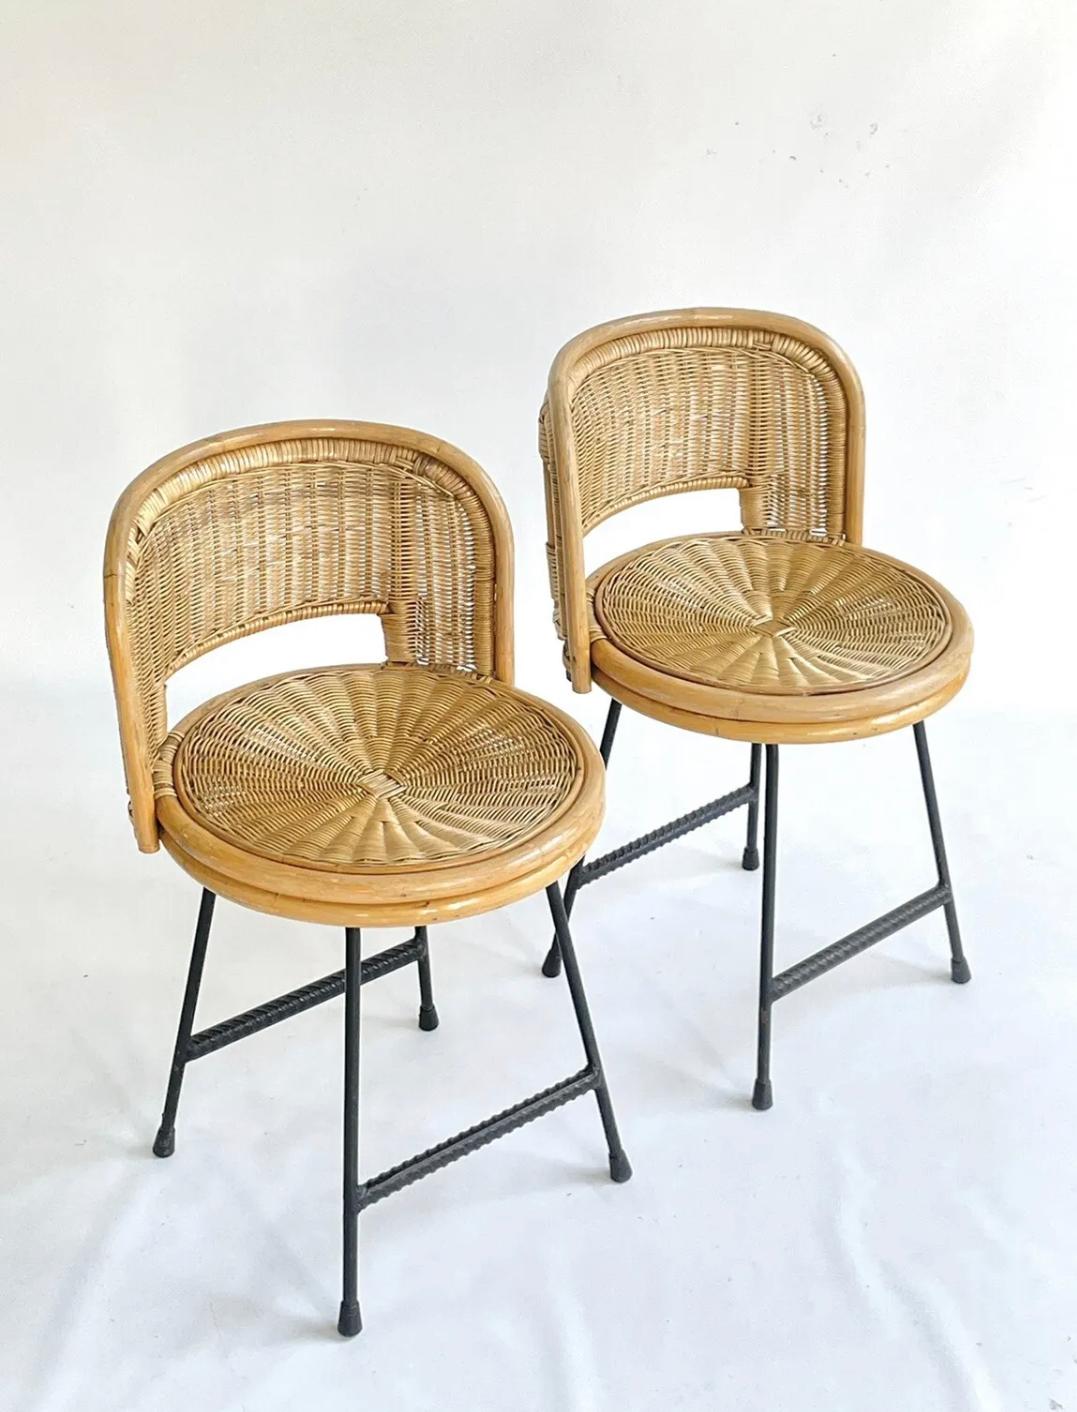 Ein schönes Paar schmiedeeiserner Stühle aus der Mitte des Jahrhunderts mit einem herrlichen Sitz aus Bambus und Rattan. Fantastisches Design mit runden Sitzen und niedrigen Rückenlehnen. Großer Zustand für das Alter.

Im Stil von Franco Albini